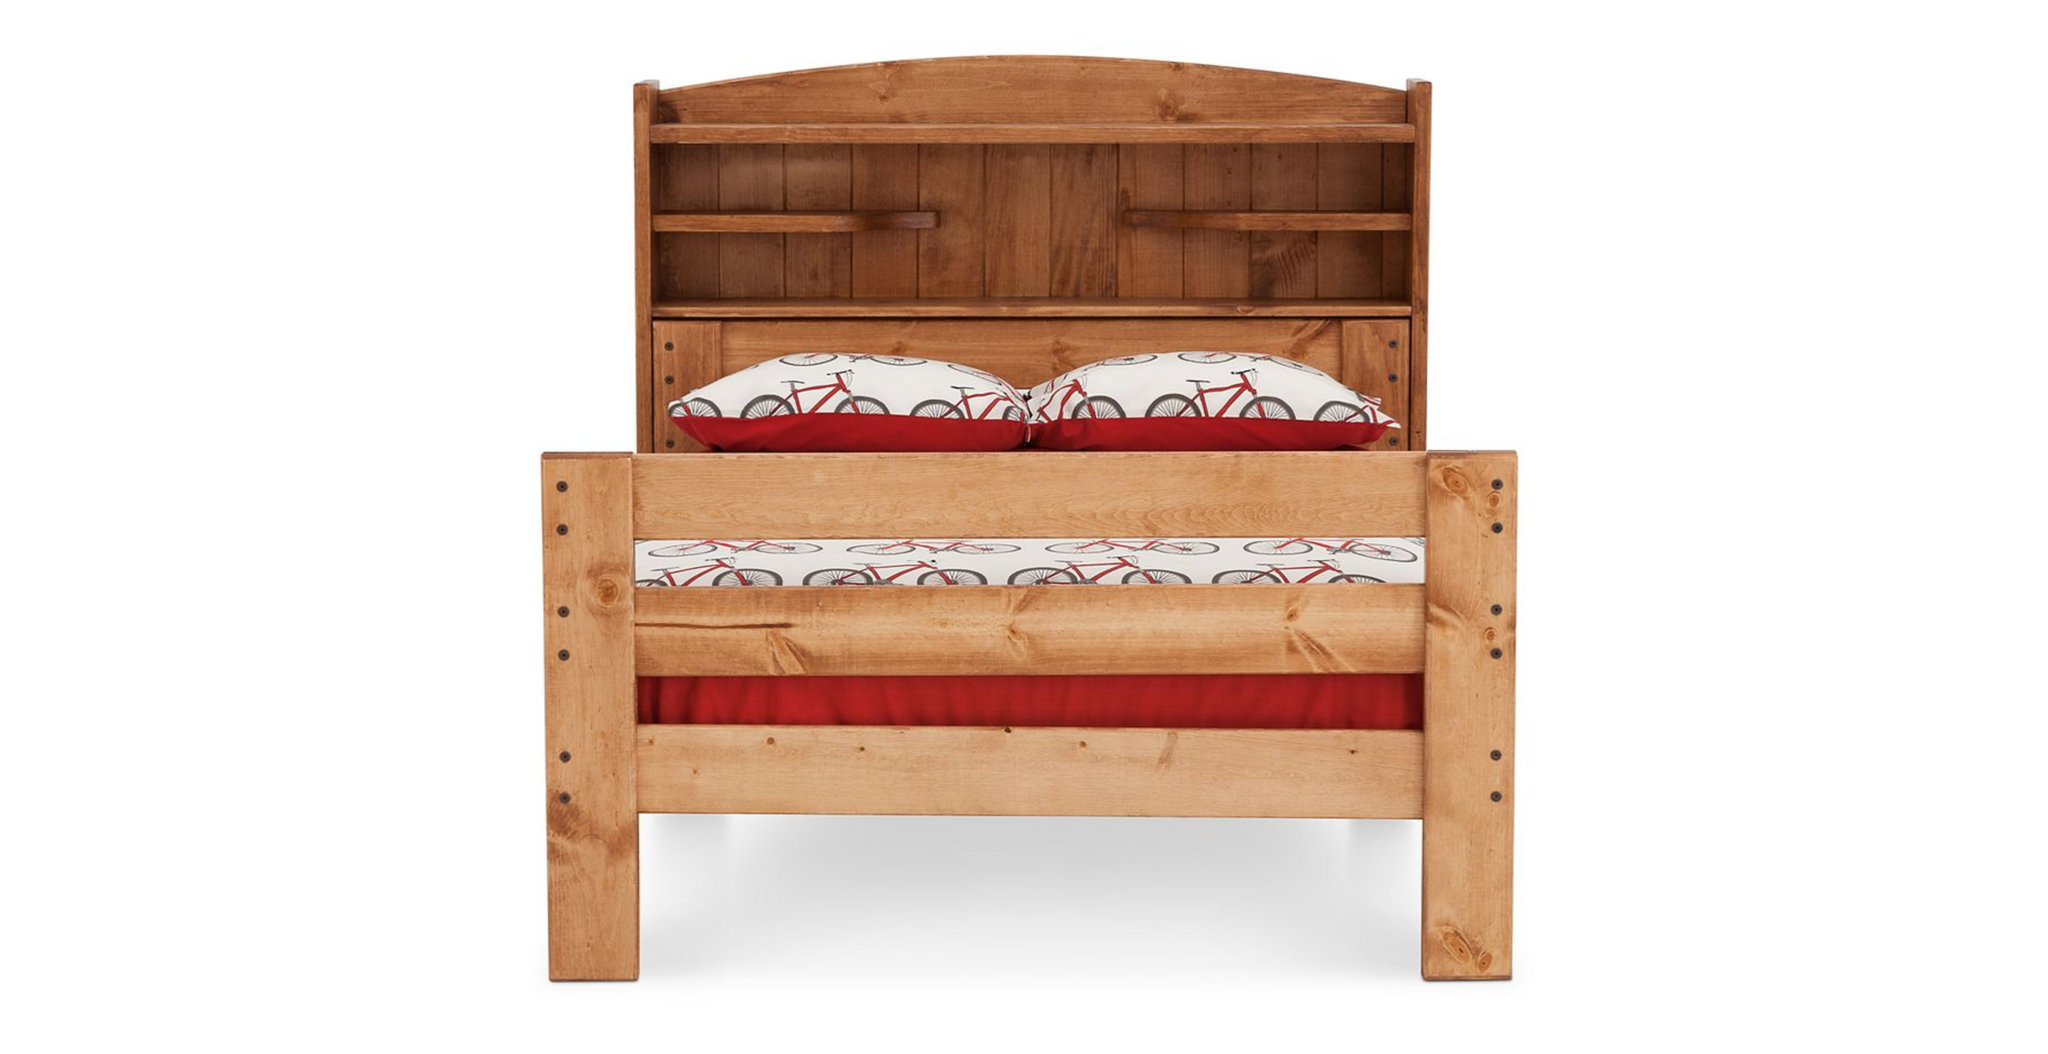 Durango Bookcase Bed in Full Size - M&J Design Furniture 